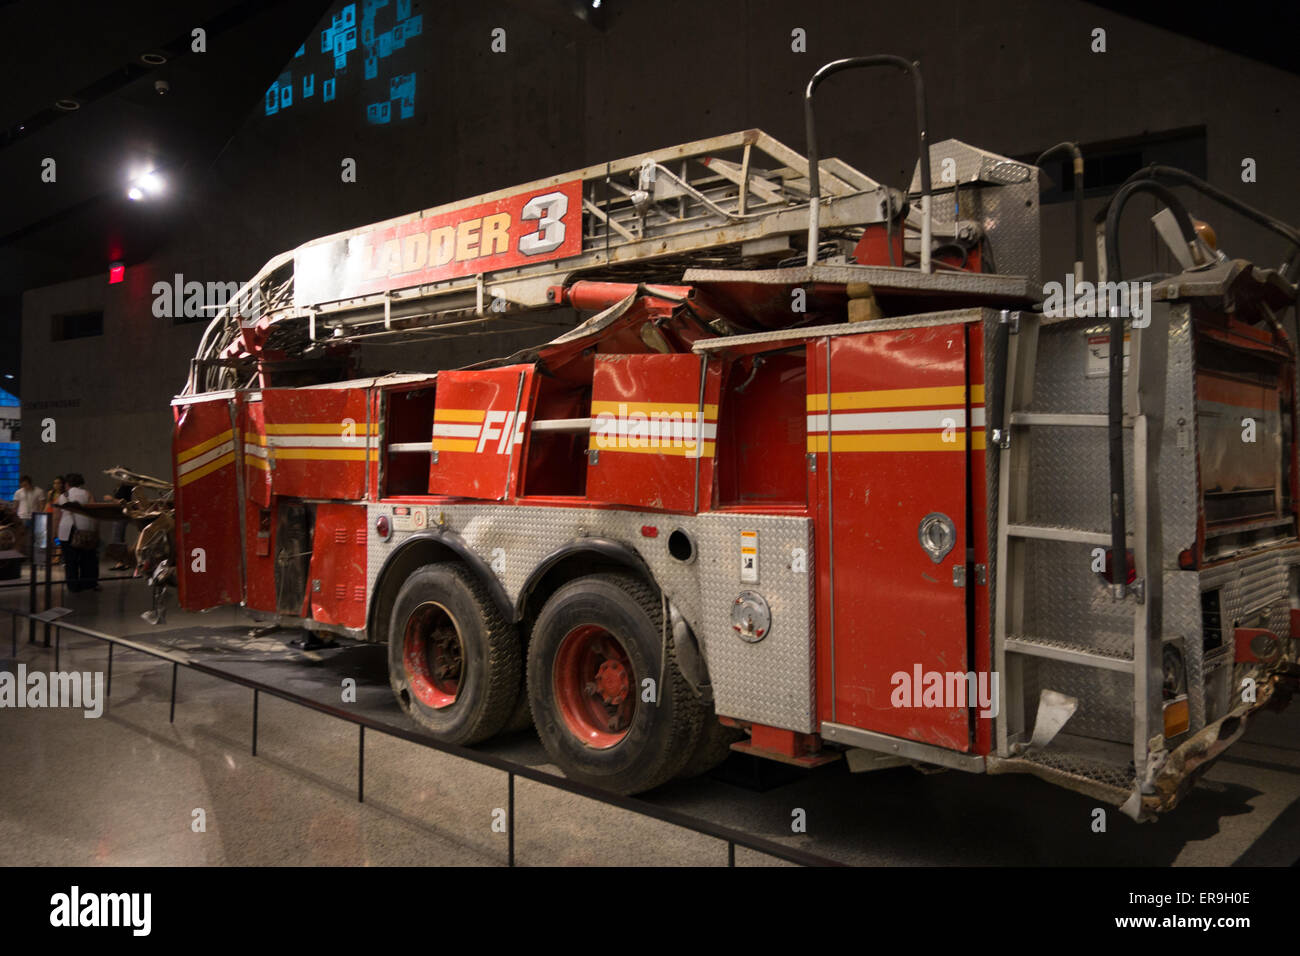 11 septembre National Memorial & Museum, pompiers de l'entreprise 3 de l'échelle de Ground Zero, New York, New York USA Banque D'Images